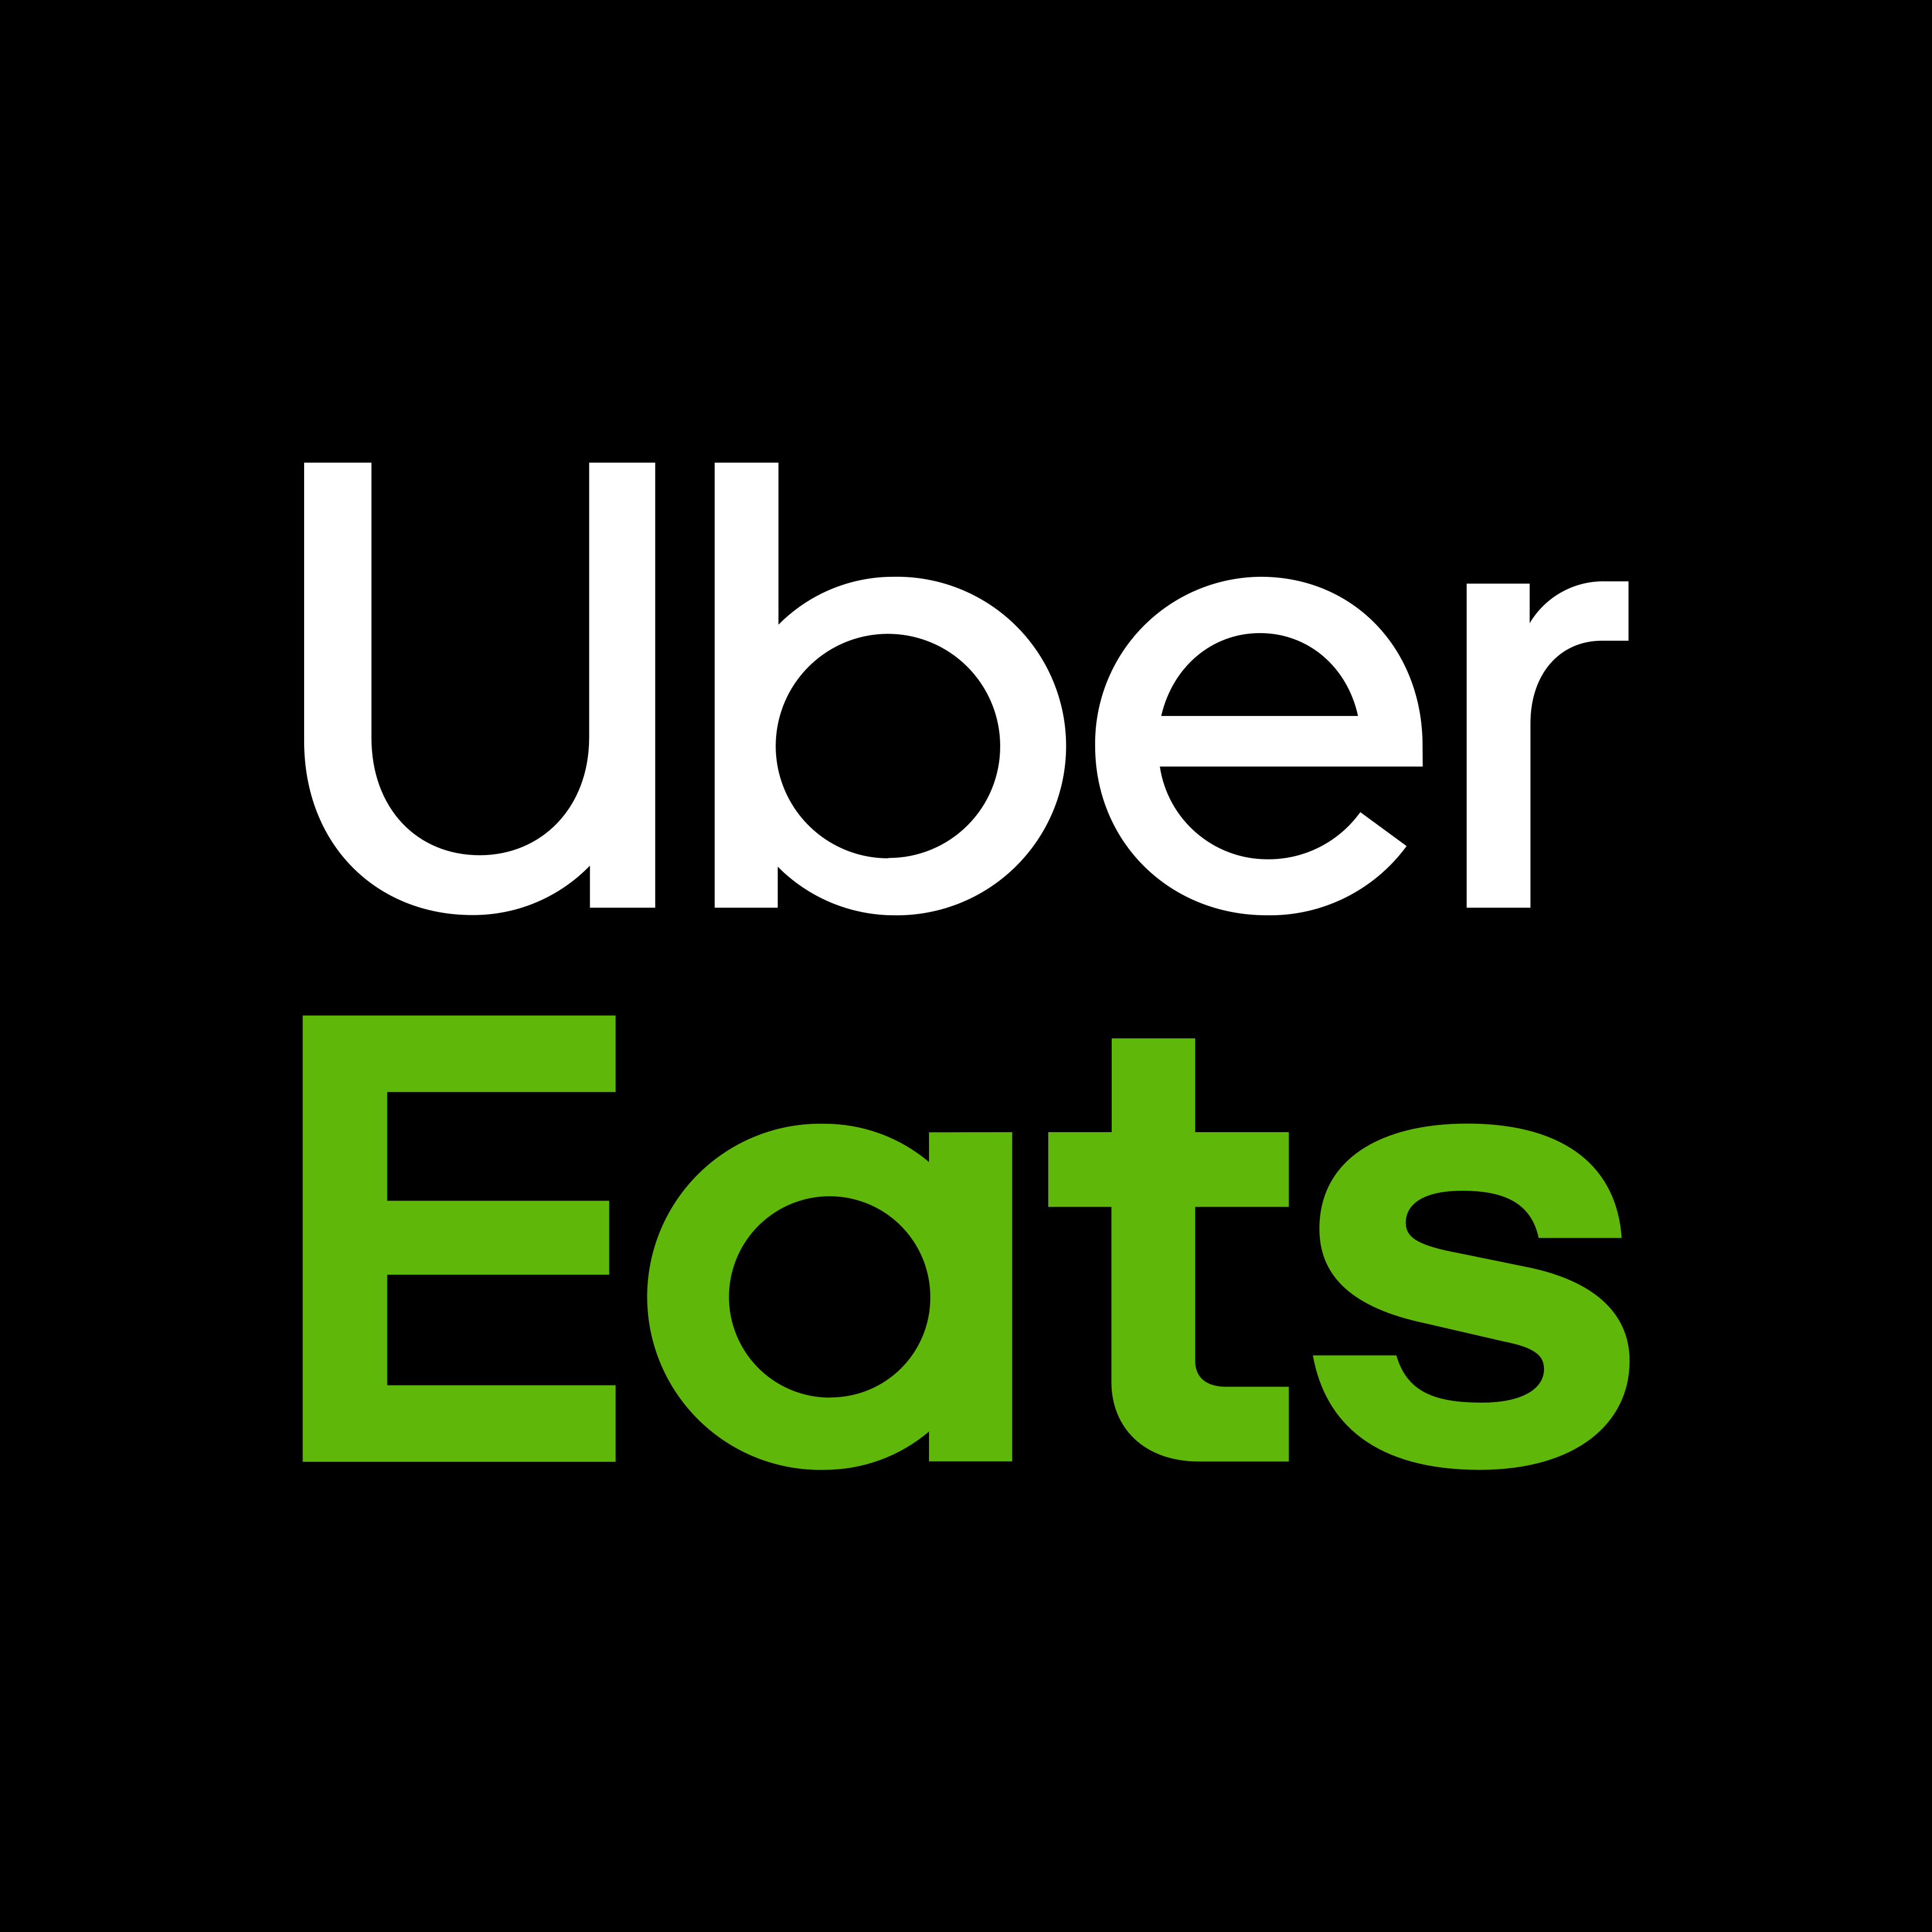 Order Uber Eats